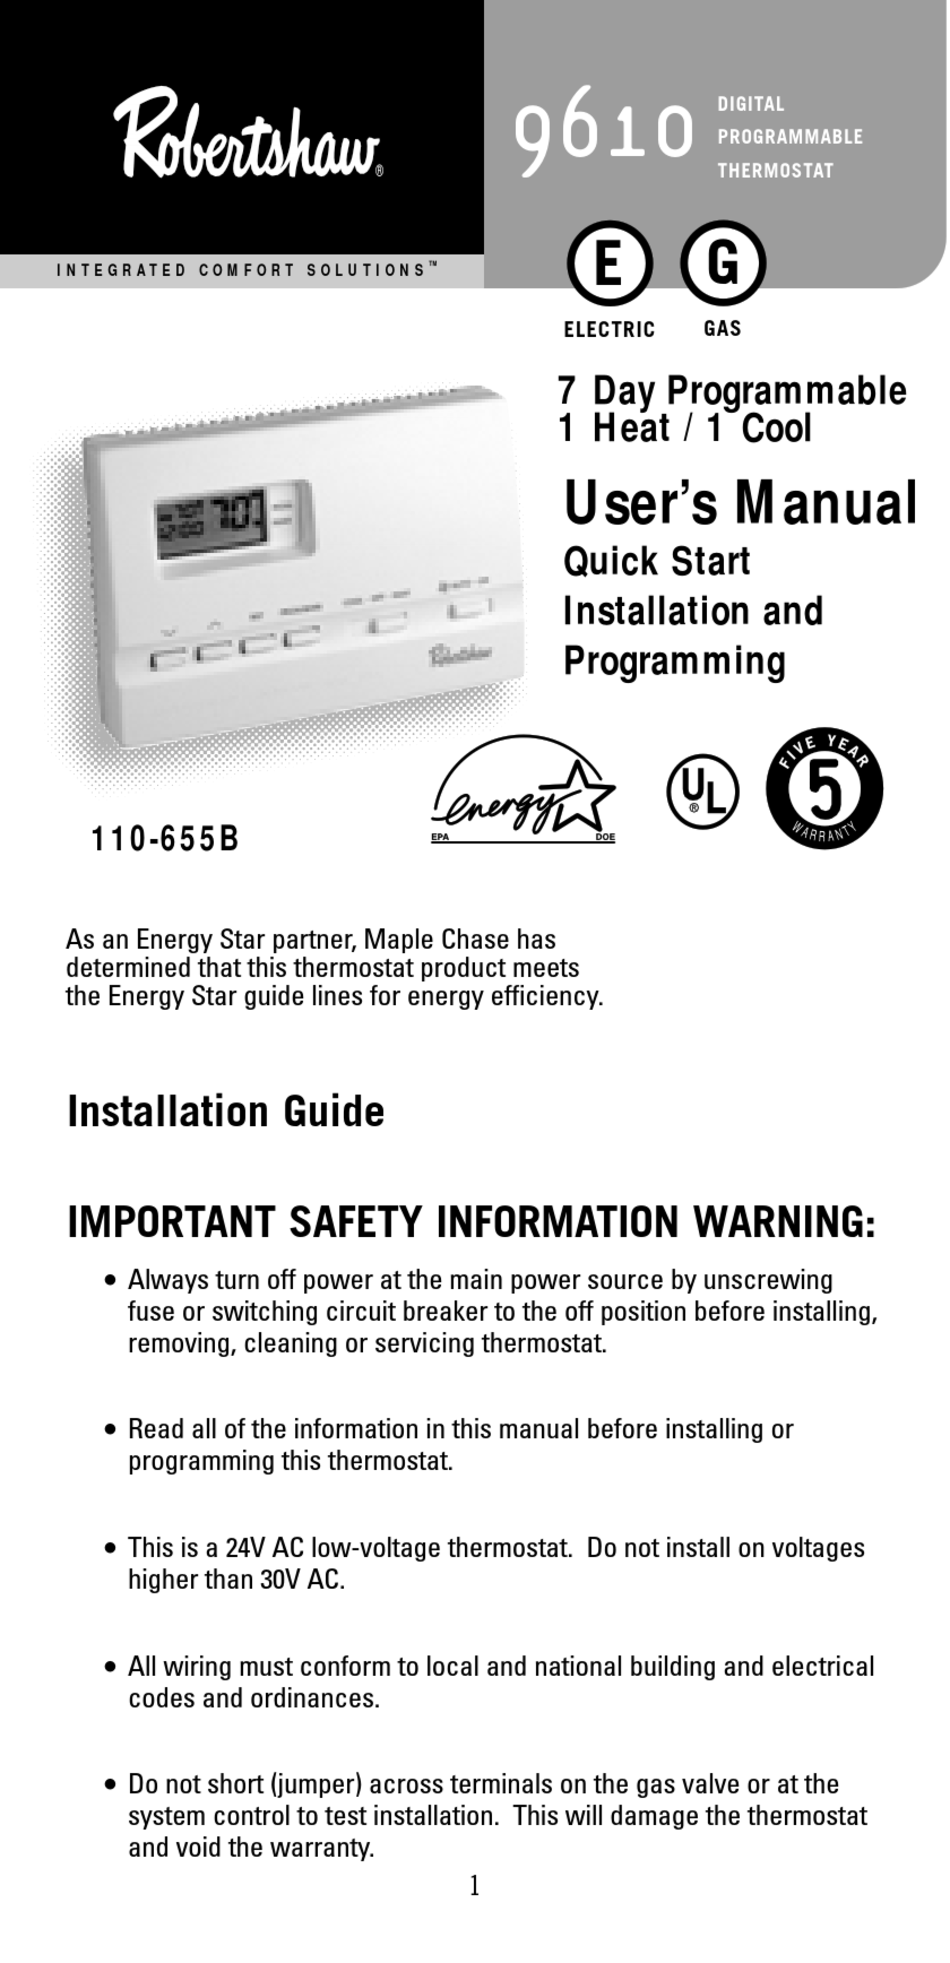 ROBERTSHAW 9610 USER MANUAL Pdf Download | ManualsLib  Robertshaw 9420 Thermostat Wiring Diagram    ManualsLib